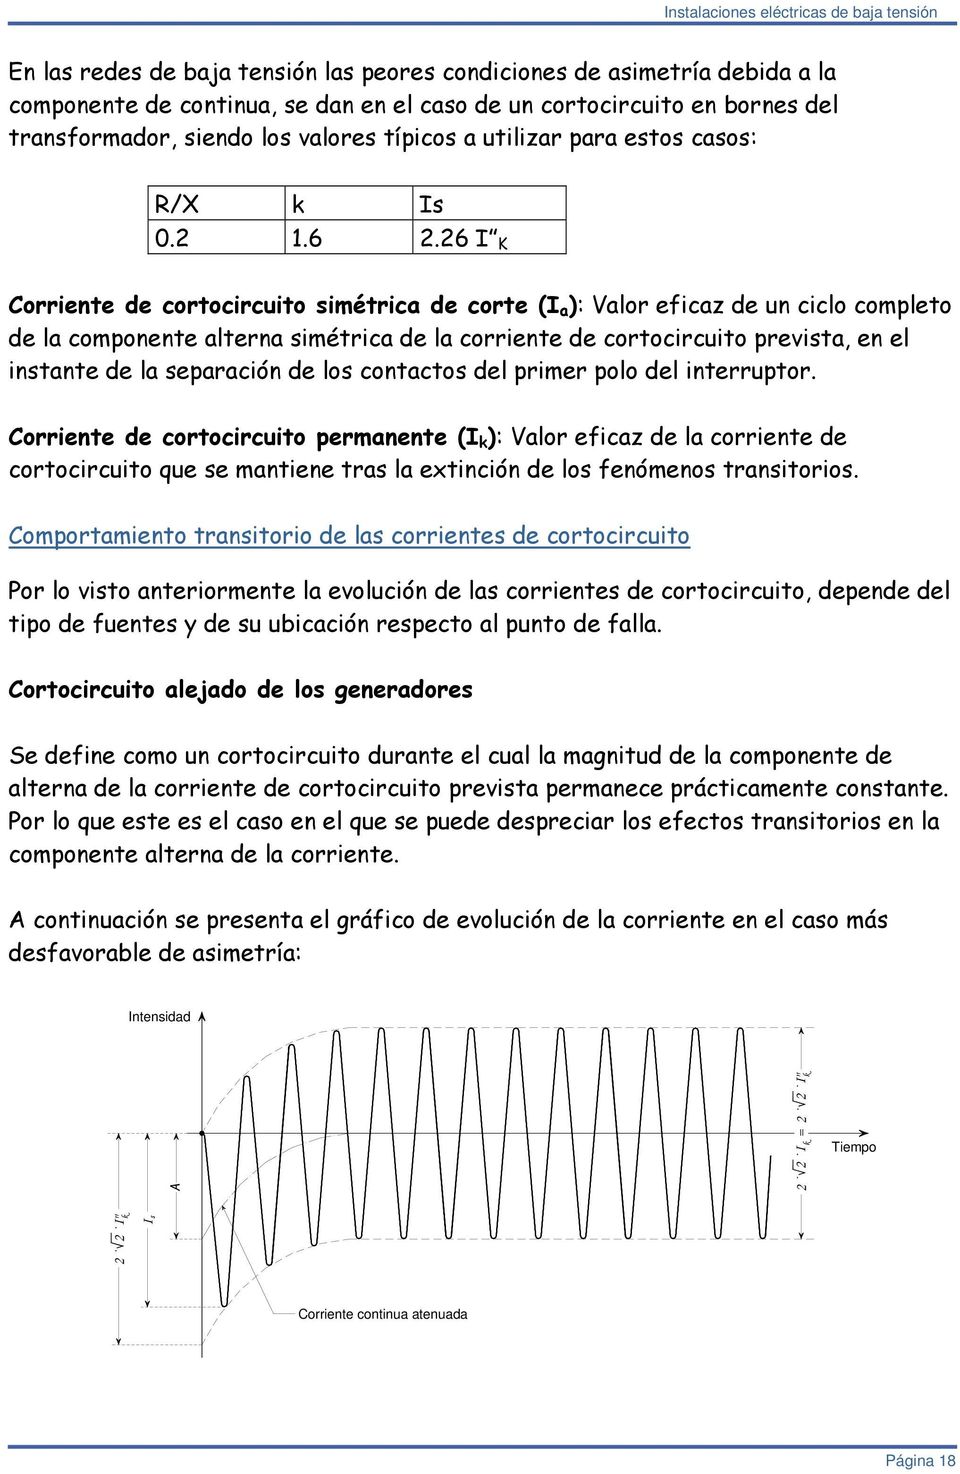 6 I K Corriete de cortocircuito simétrica de corte (I a ): Valor eficaz de u ciclo completo de la compoete altera simétrica de la corriete de cortocircuito prevista, e el istate de la separació de